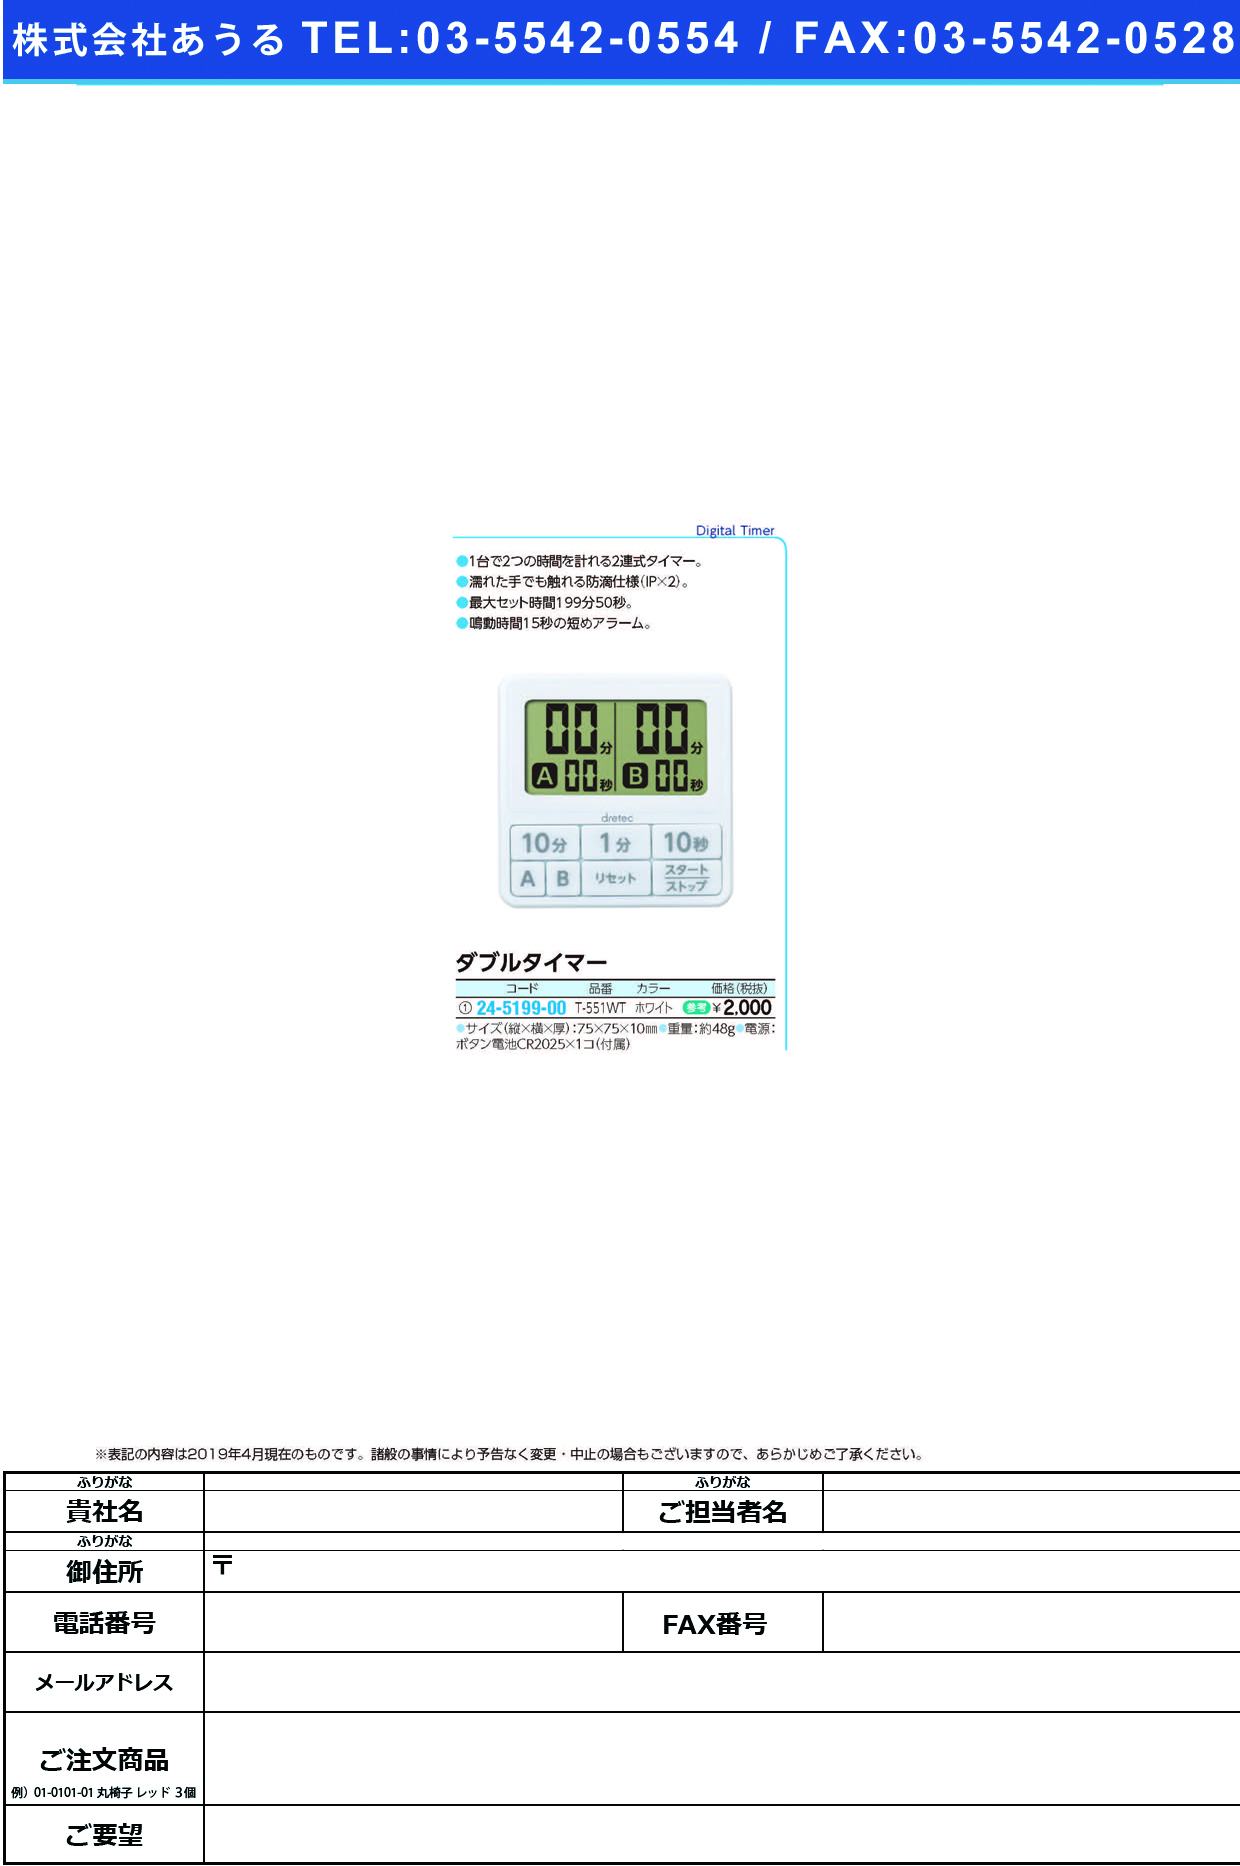 (24-5199-00)ダブルタイマー T-551WT(ﾎﾜｲﾄ) ﾀﾞﾌﾞﾙﾀｲﾏｰ(ドリテック)【1台単位】【2019年カタログ商品】